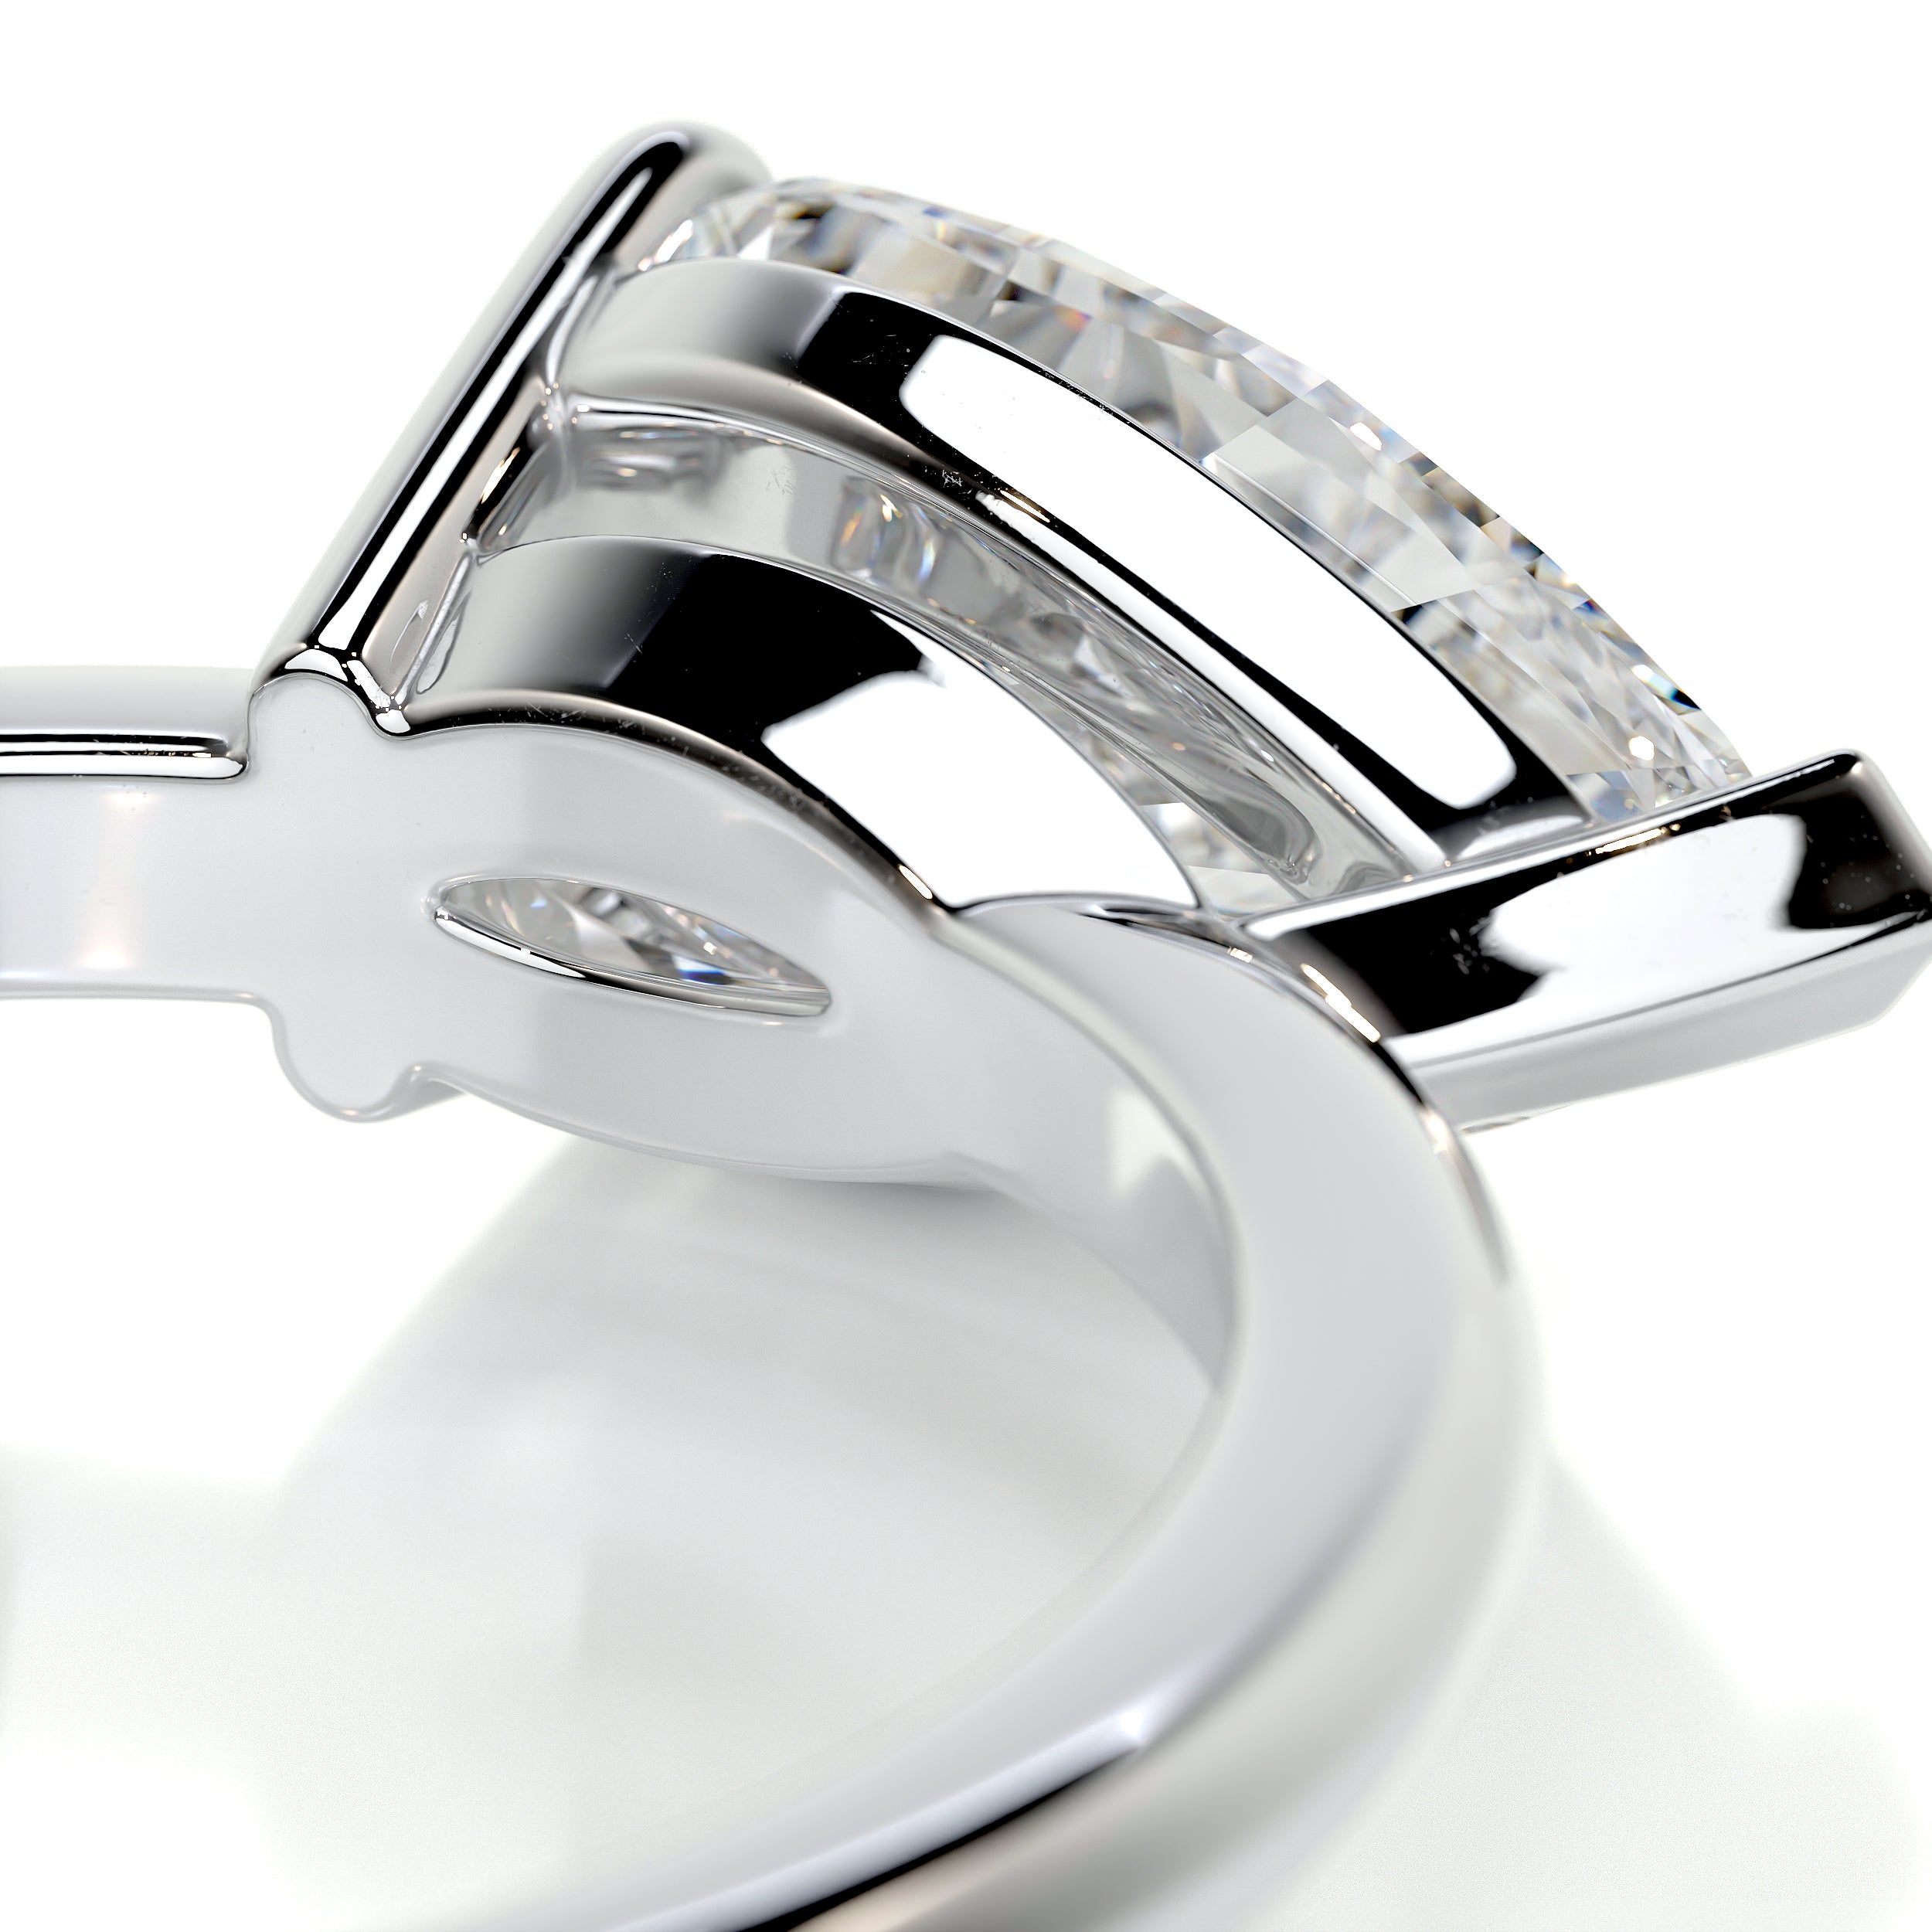 Miriam Diamond Engagement Ring -Platinum